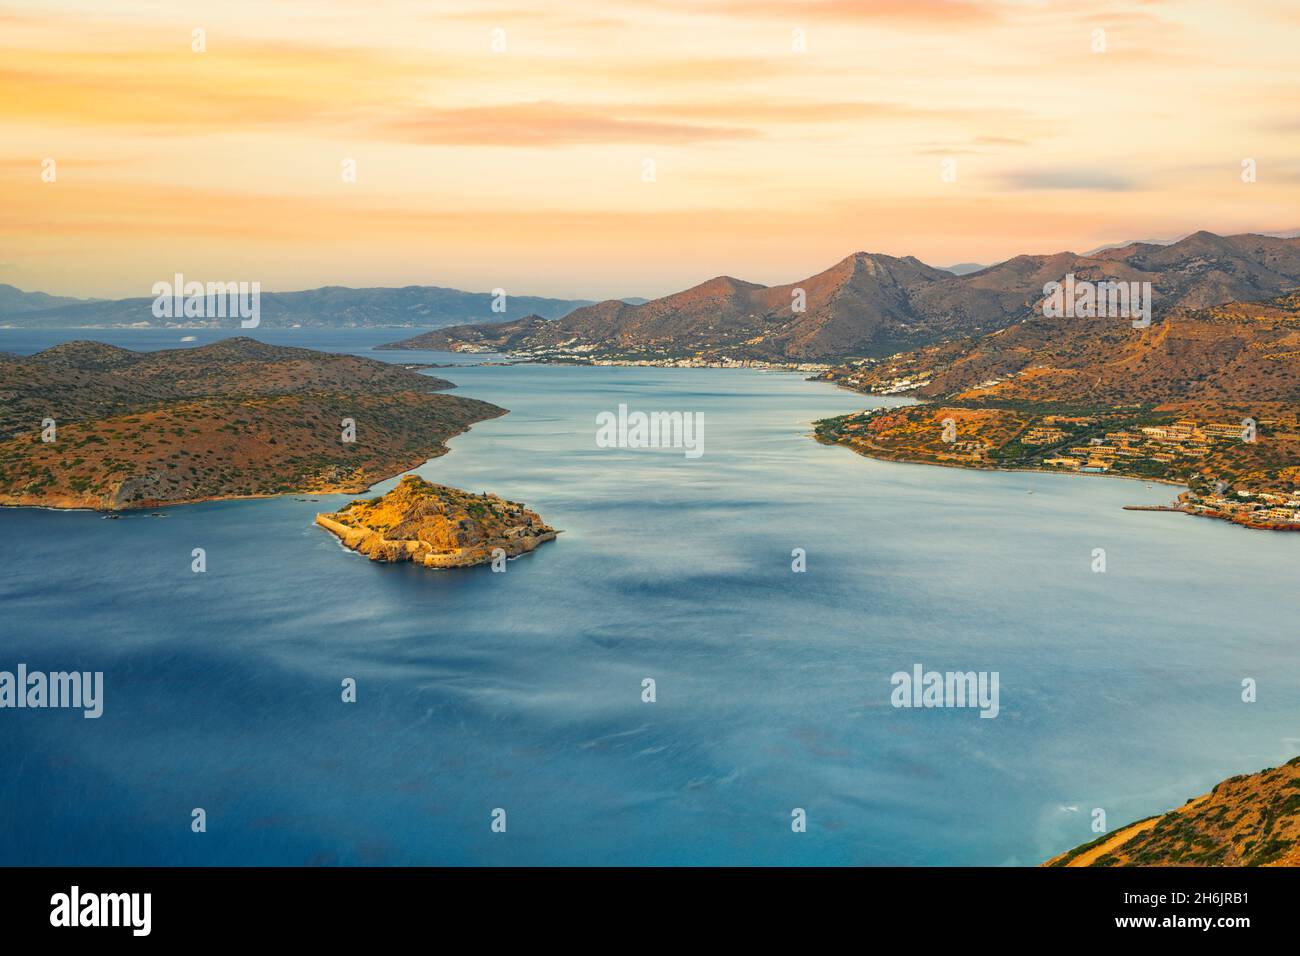 Île de Spinalonga dans la mer bleue du golfe de Mirabello au lever du soleil, Plaka, préfecture de Lasithi, Crète, Iles grecques,Grèce, Europe Banque D'Images